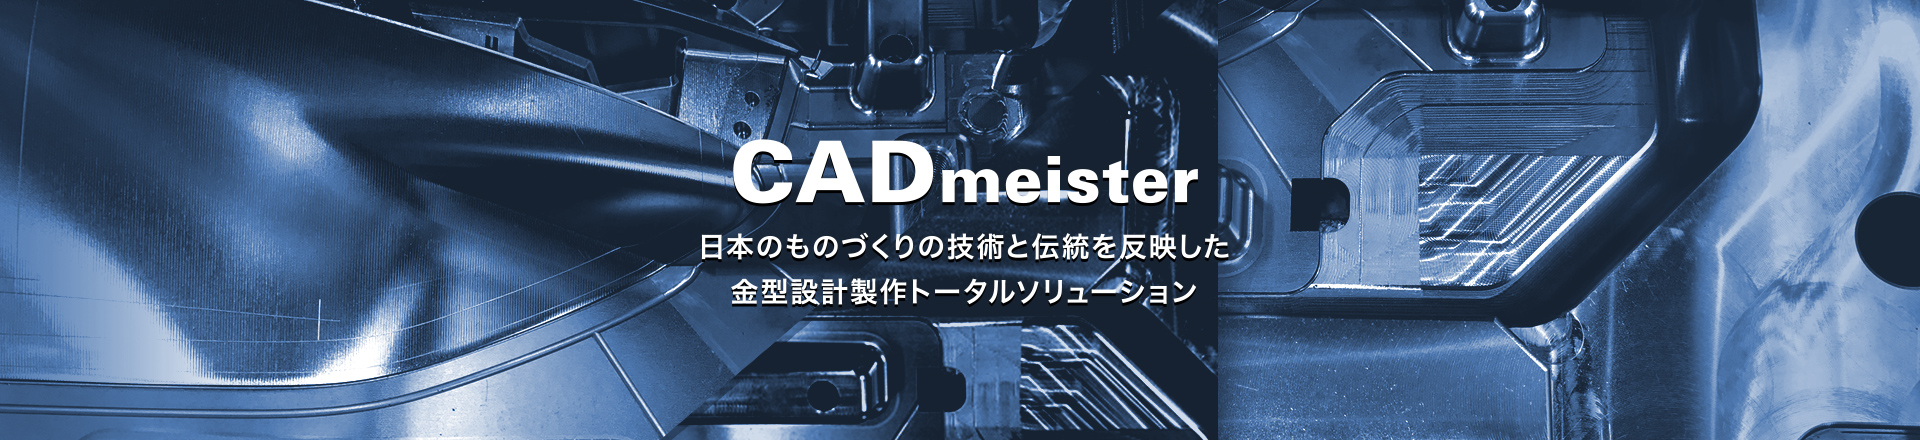 CADmeister 日本のものづくりの技術と伝統を反映した 金型設計製作トータルソリュ−ション